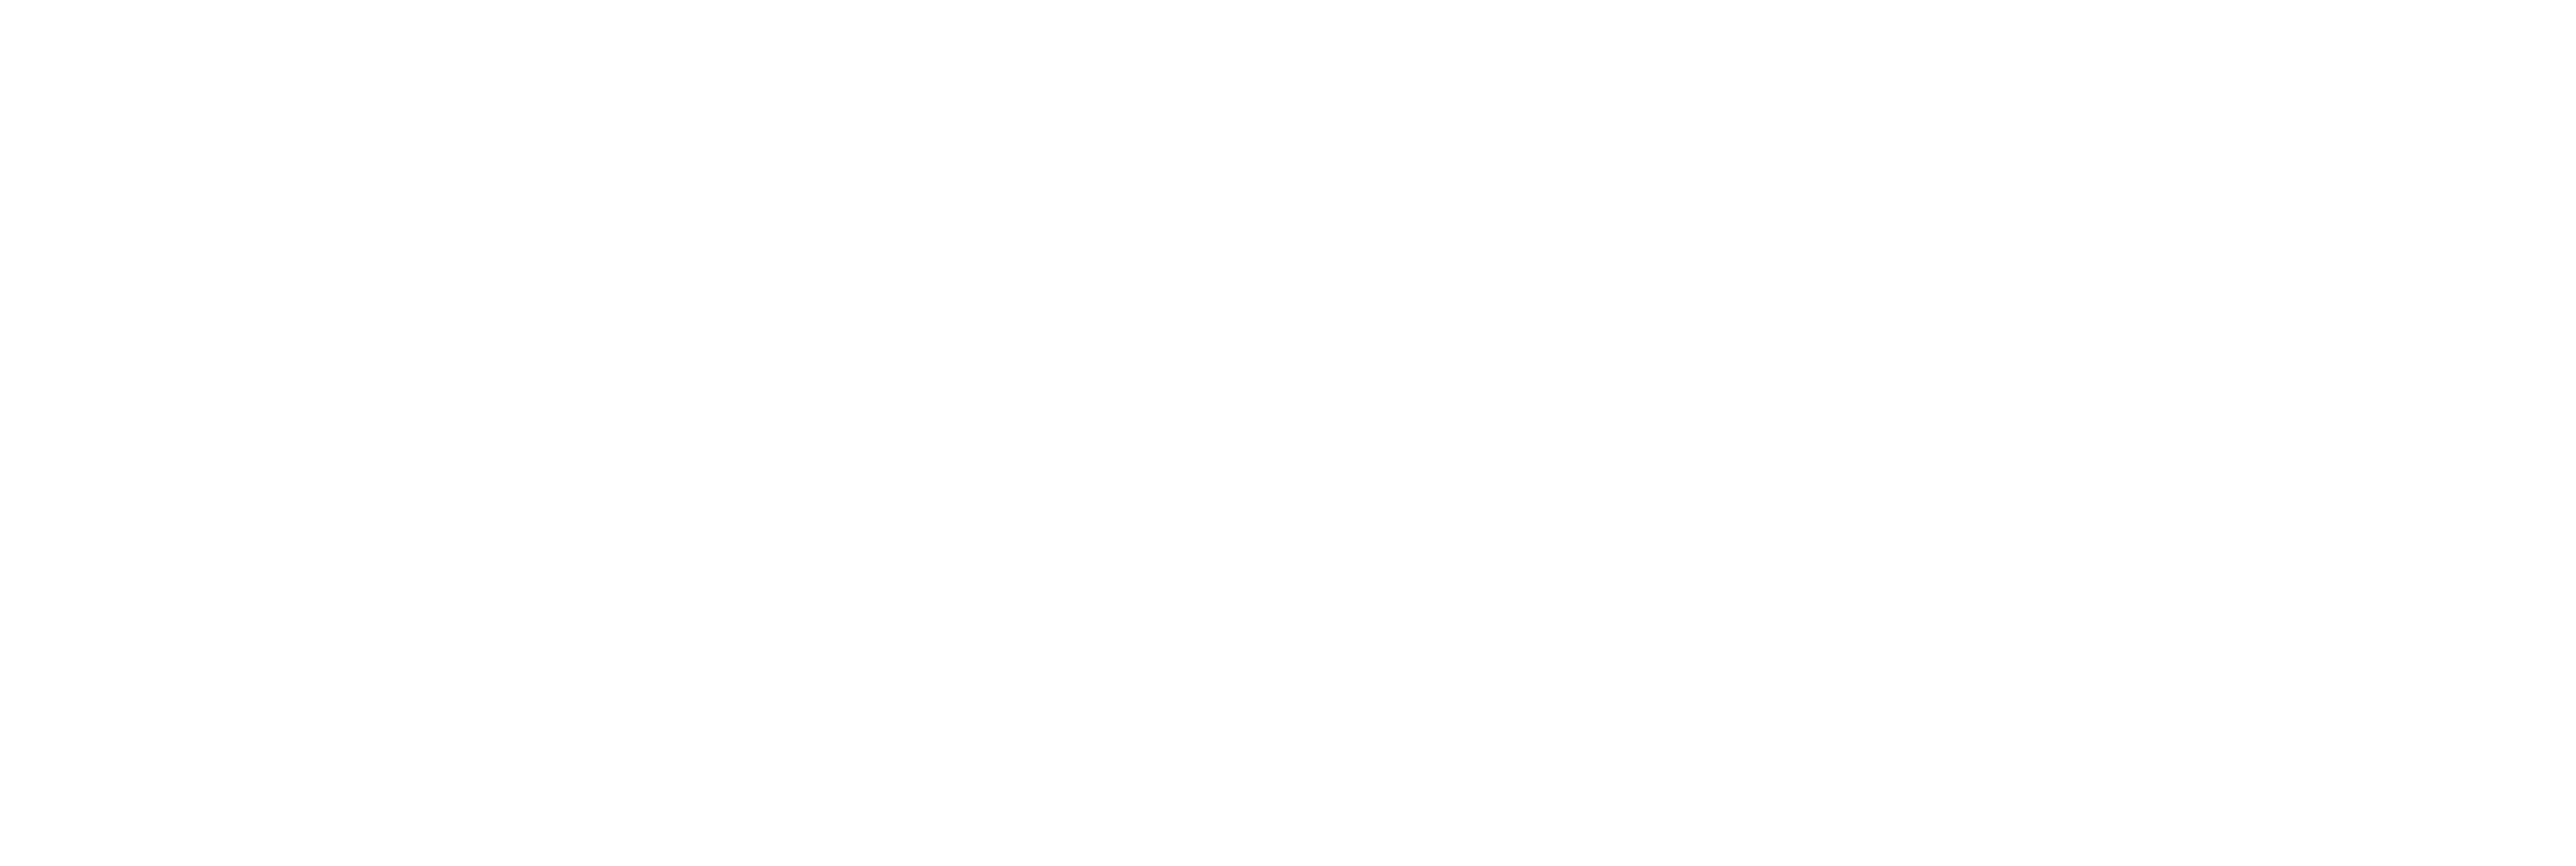 James Baker & Associates